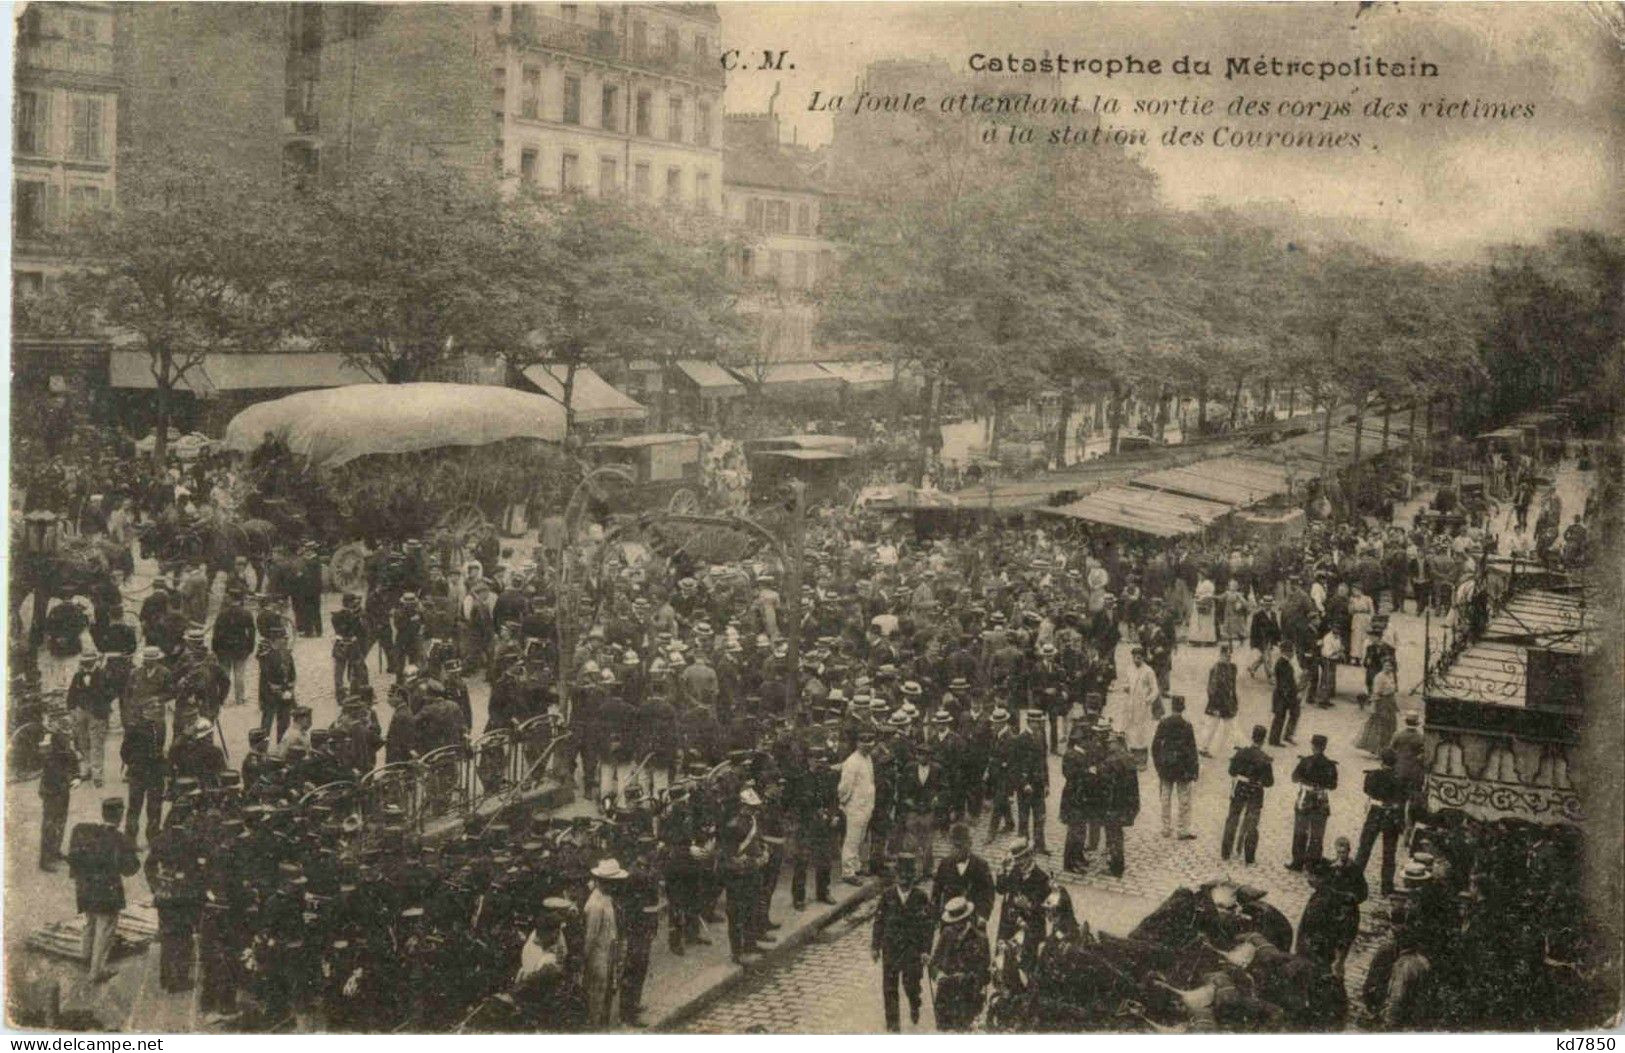 Paris - Catastrophe Du Metropolitain - Pariser Métro, Bahnhöfe